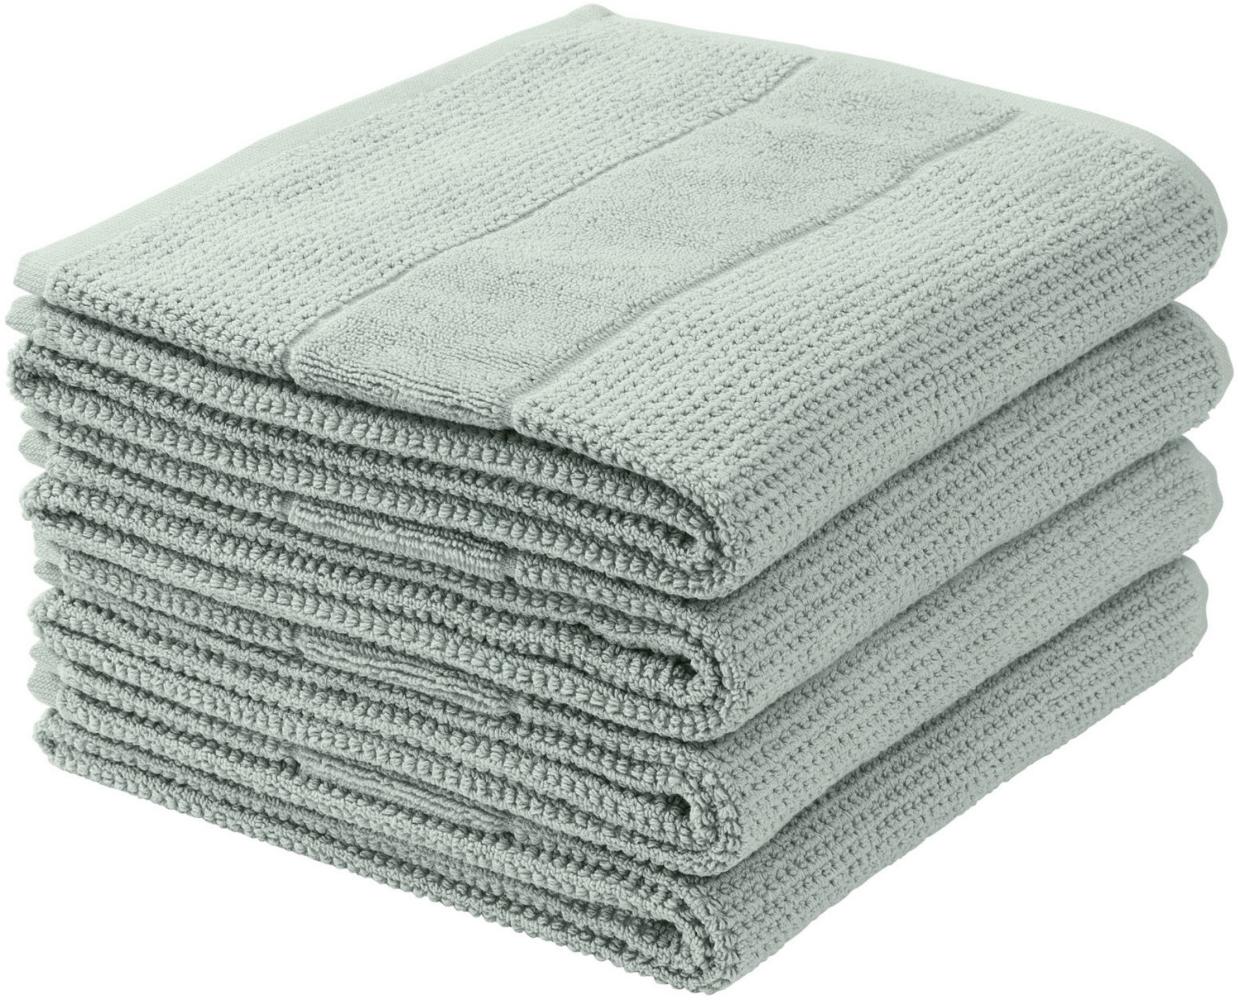 Schiesser Handtücher Turin im 4er Set aus 100% Baumwolle, nachhaltig und fair produziert, Farbe:Eisblau, Größe:50 cm x 100 cm Bild 1